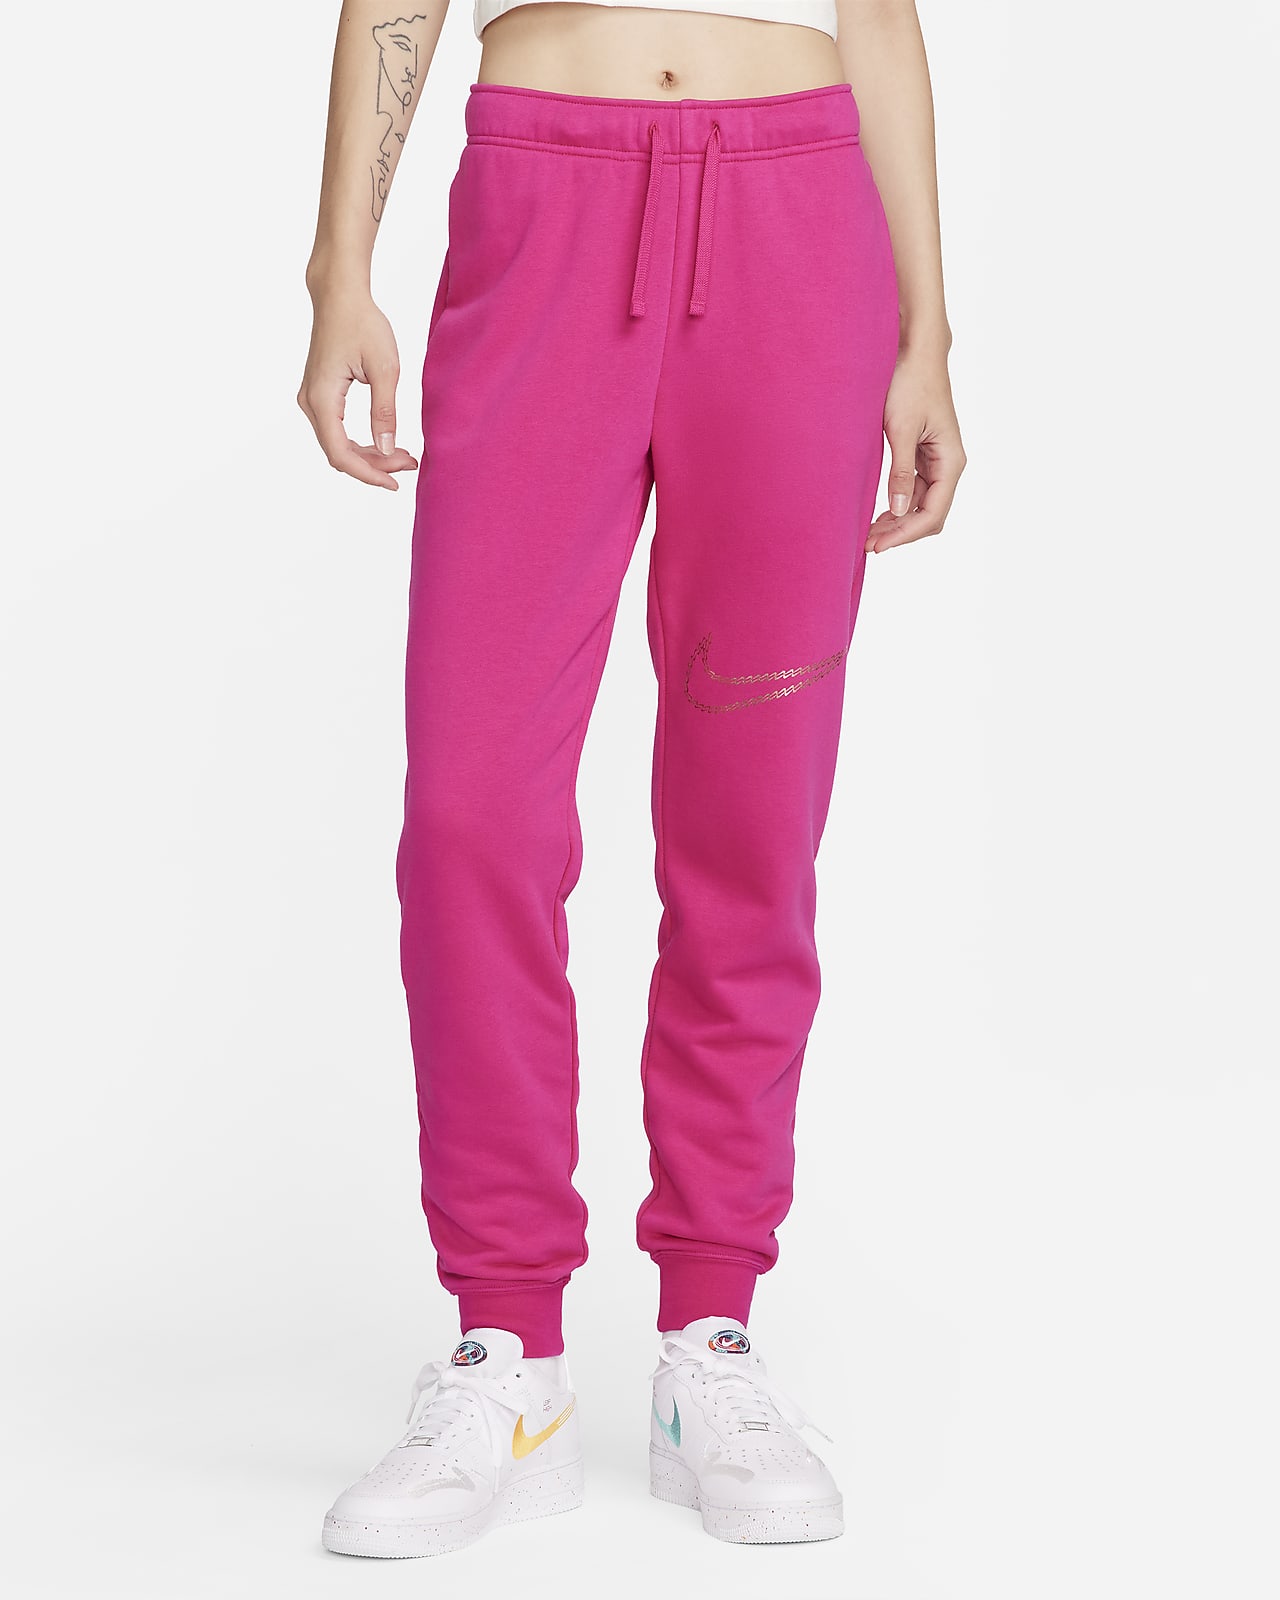 Pantalon deportivo Nike para Mujer NIKE